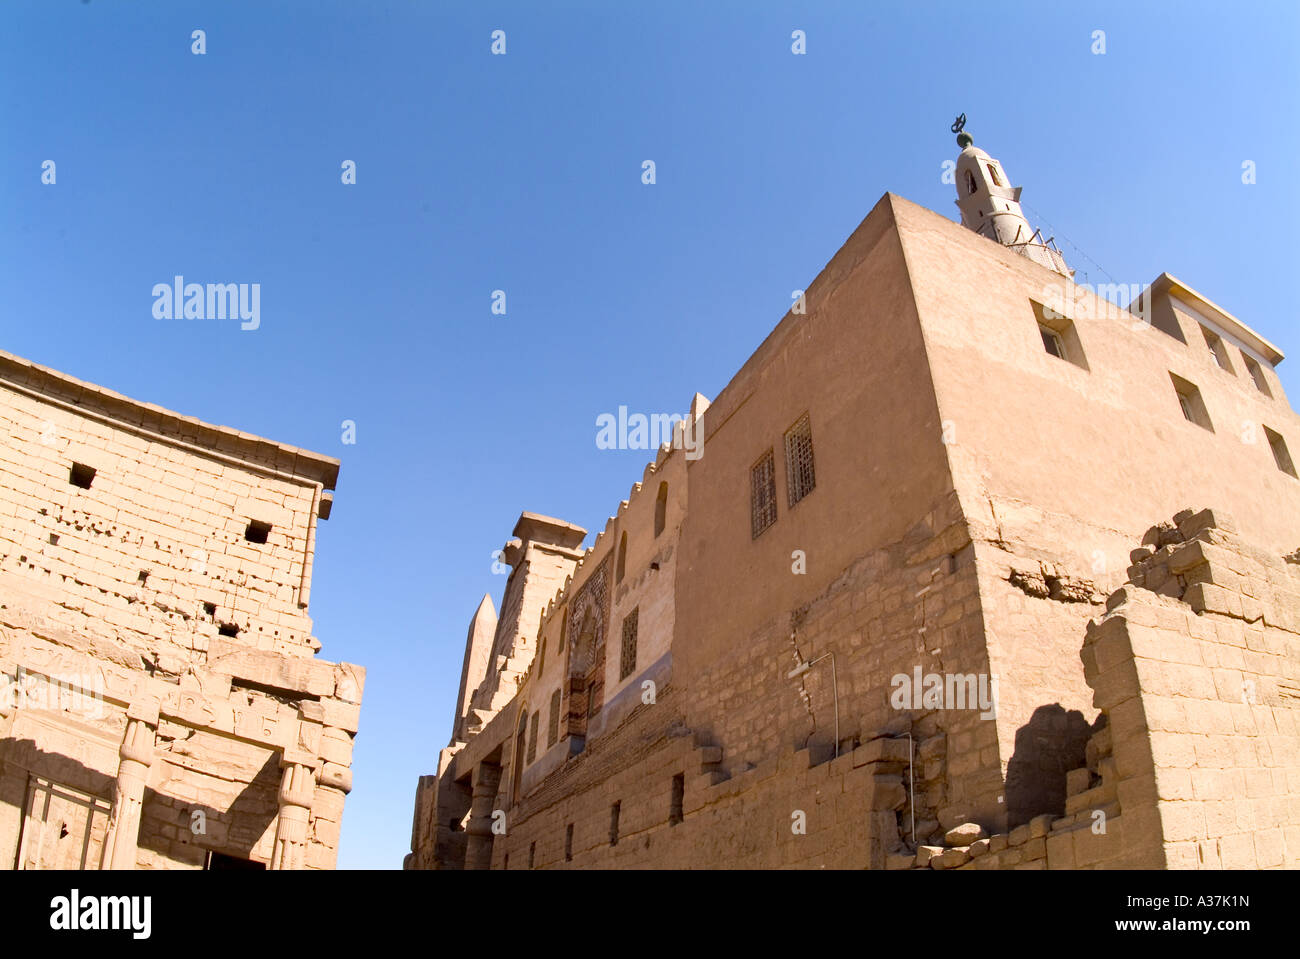 Luxor-Tempel Wände Dach Spitzen Fenster Öffnungen Dekorationen Hall Gericht Luxor Ägypten-Nordafrika Stockfoto